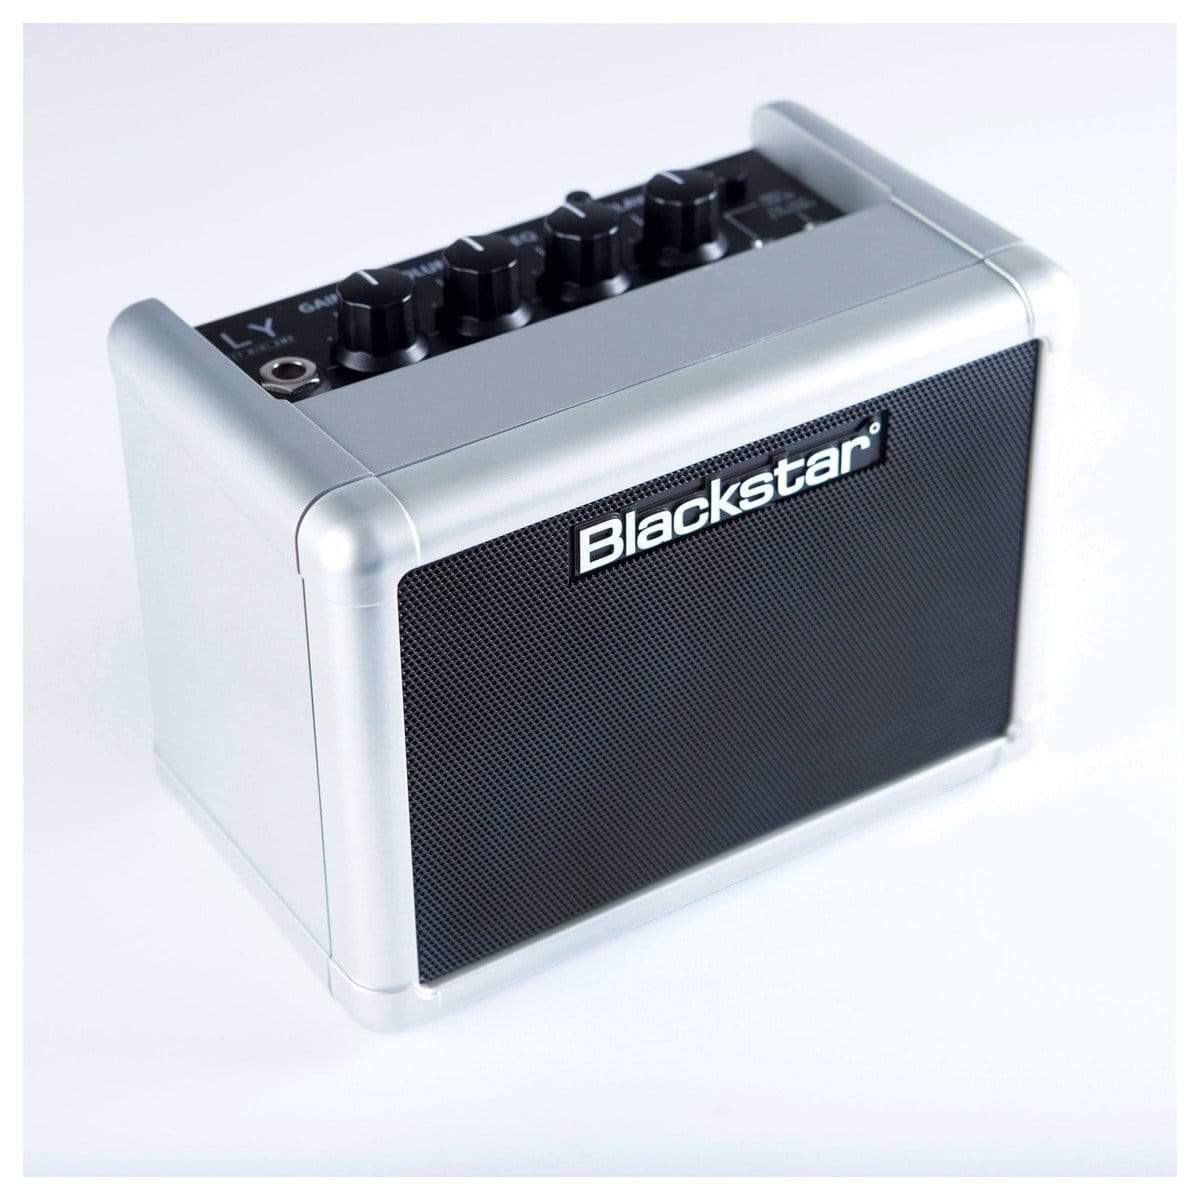 Blackstar Amplifier Blackstar Fly 3 Mini Amp - Silver